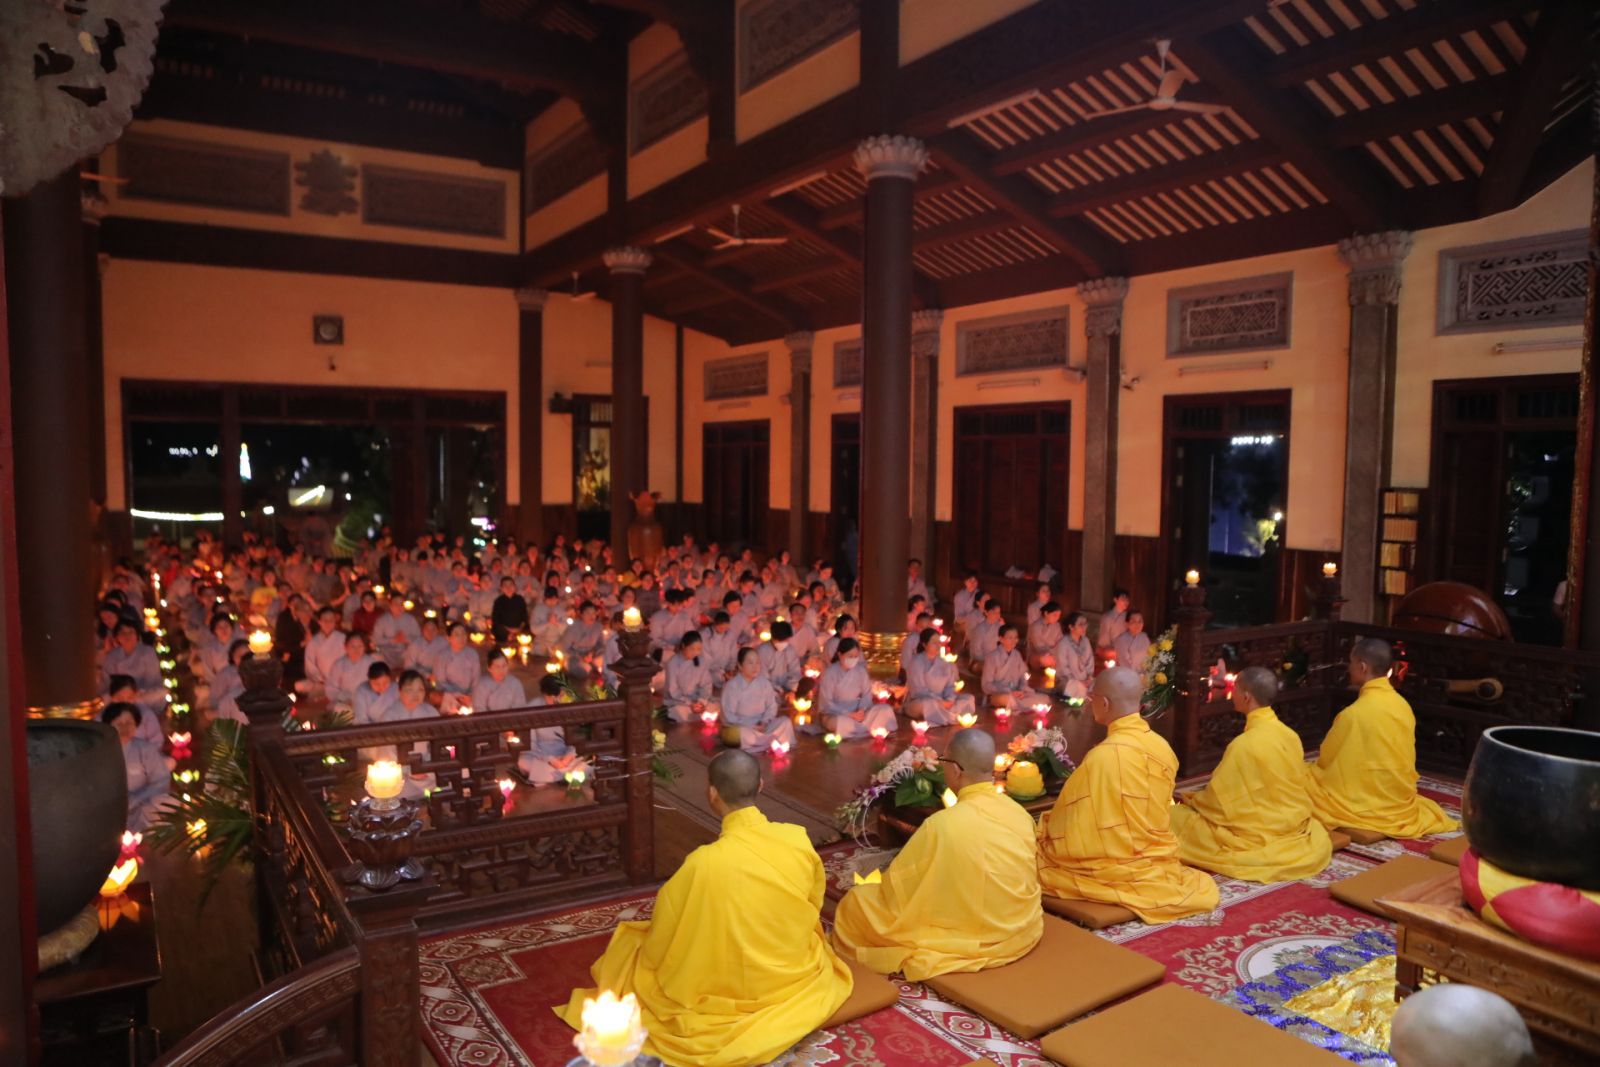 Chùa Pháp Hoa Trang nghiêm tổ chức Đại lễ Kỷ niệm Đức Phật Thành Đạo PL. 2567 - DL. 2024